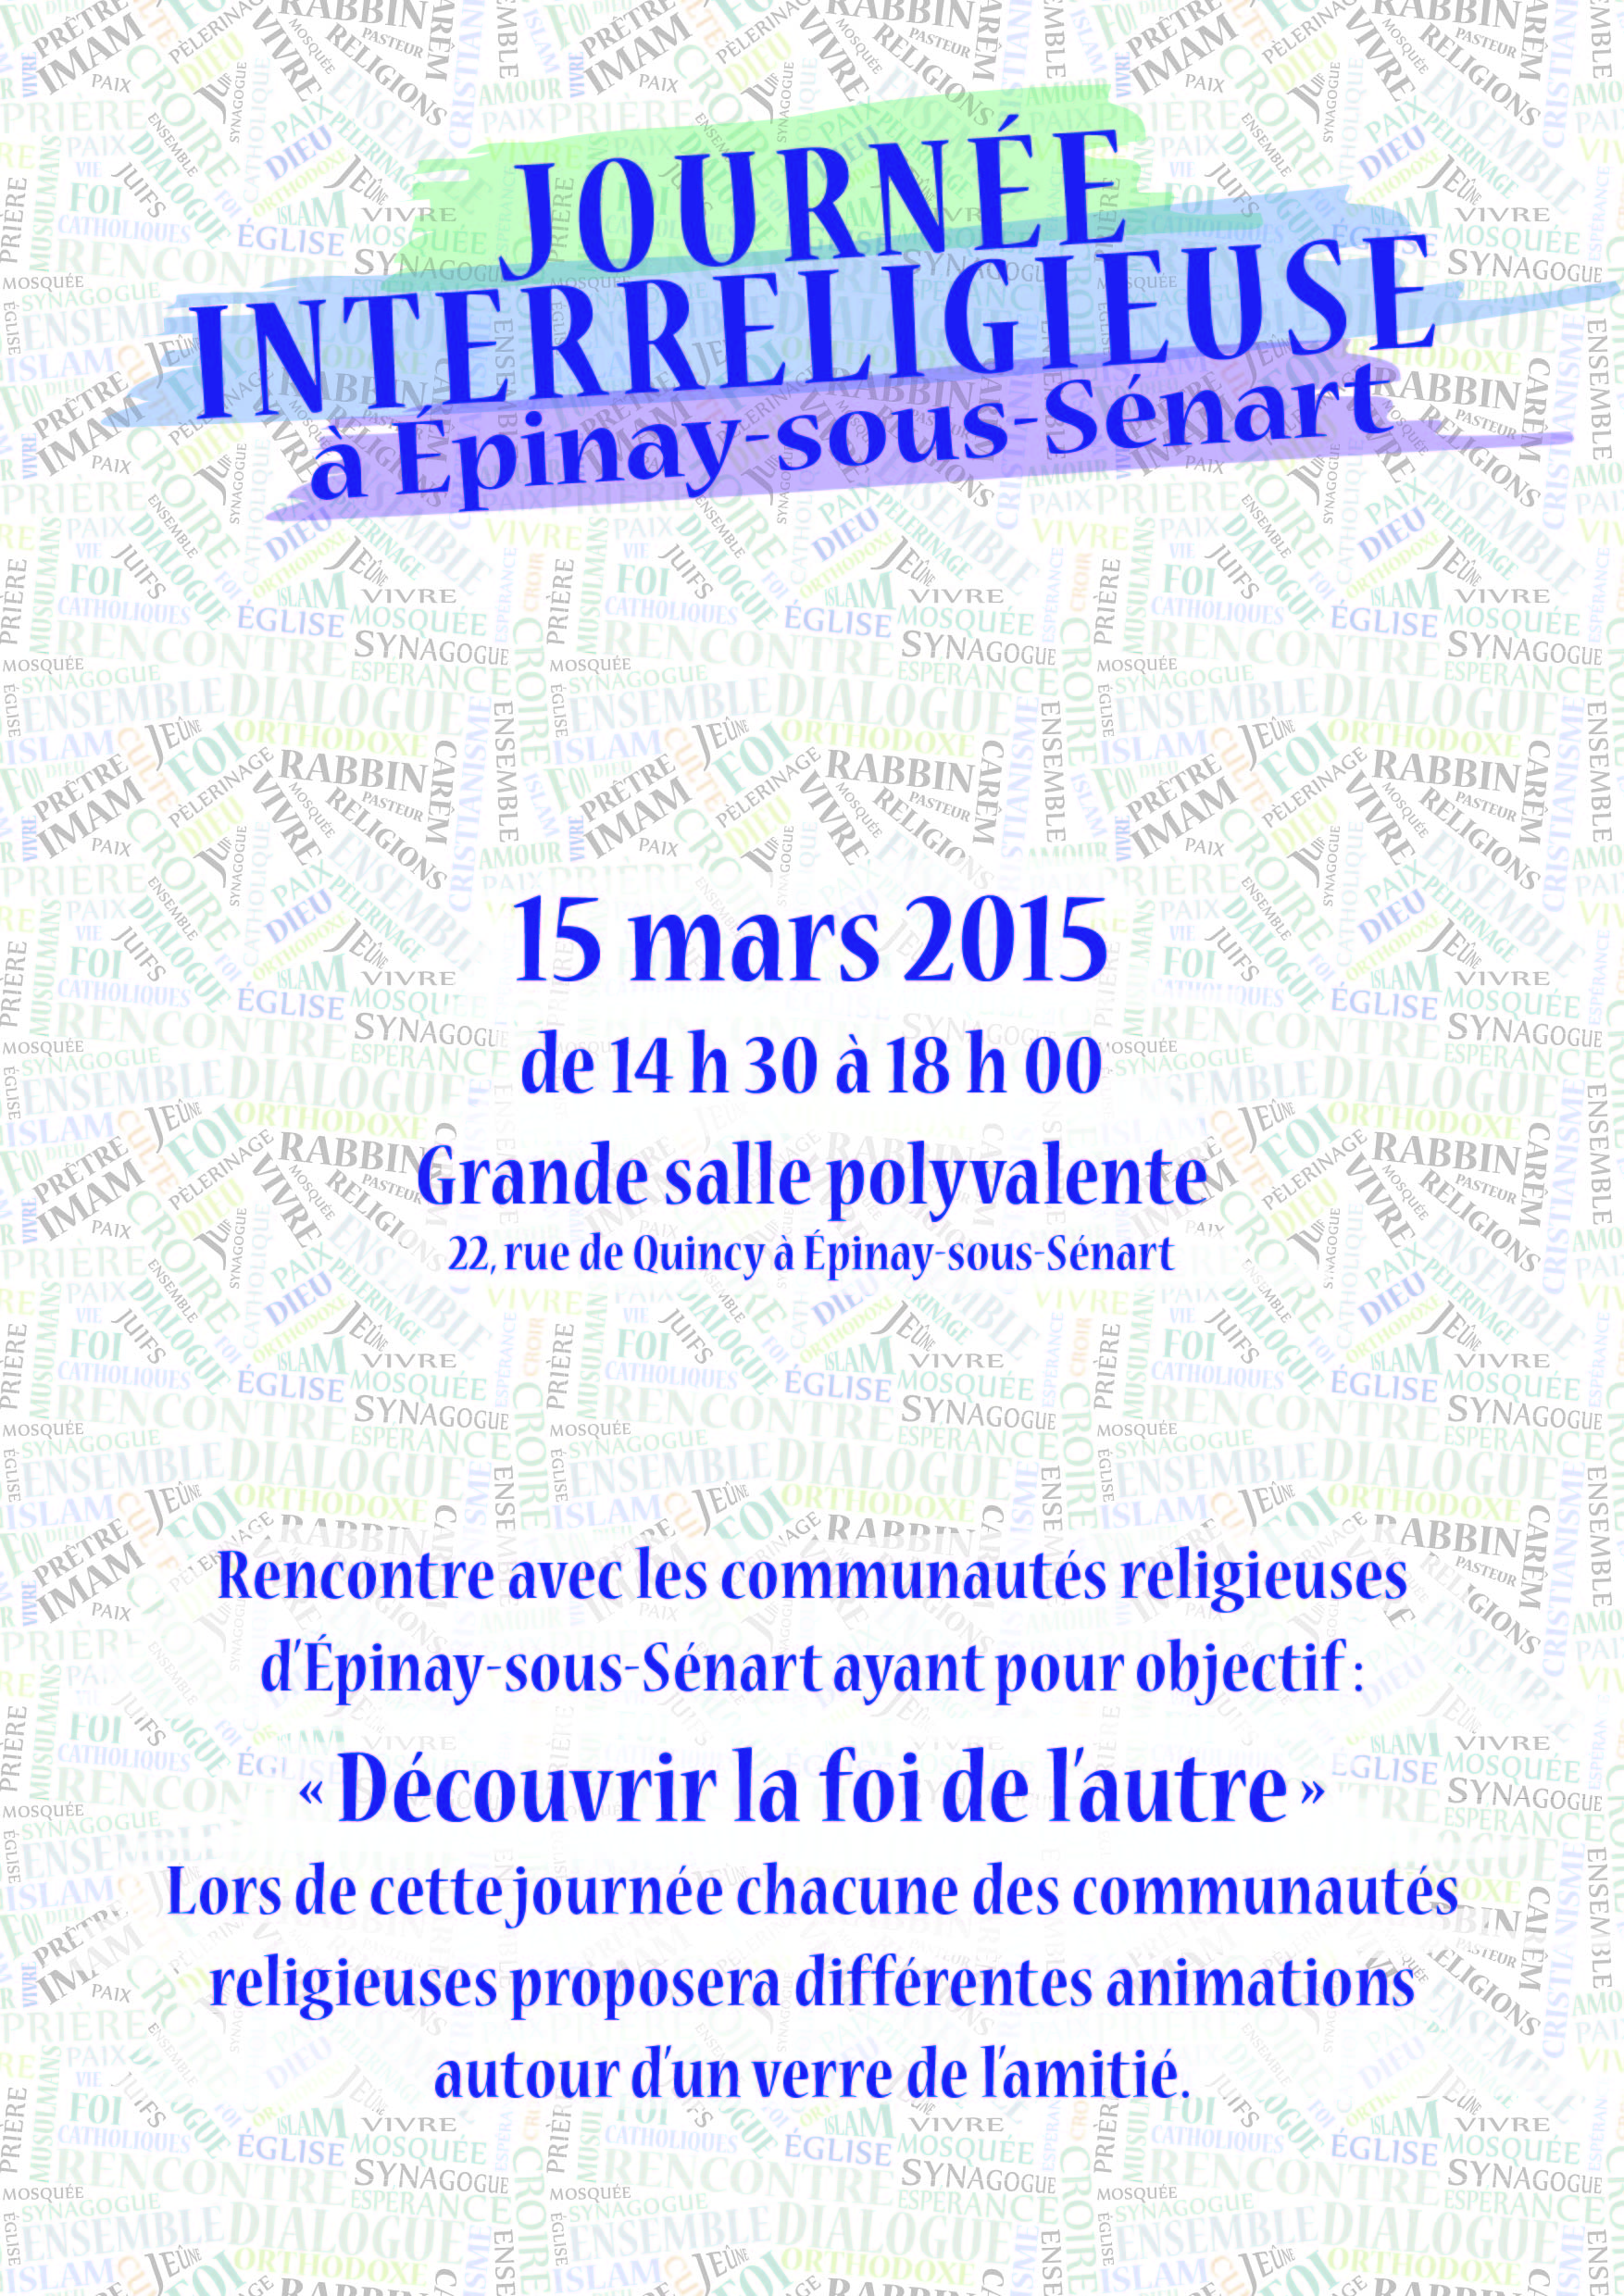 Programme de la Journée interreligieuse d'Épinay-sous-Sénart (15 mars 2015)